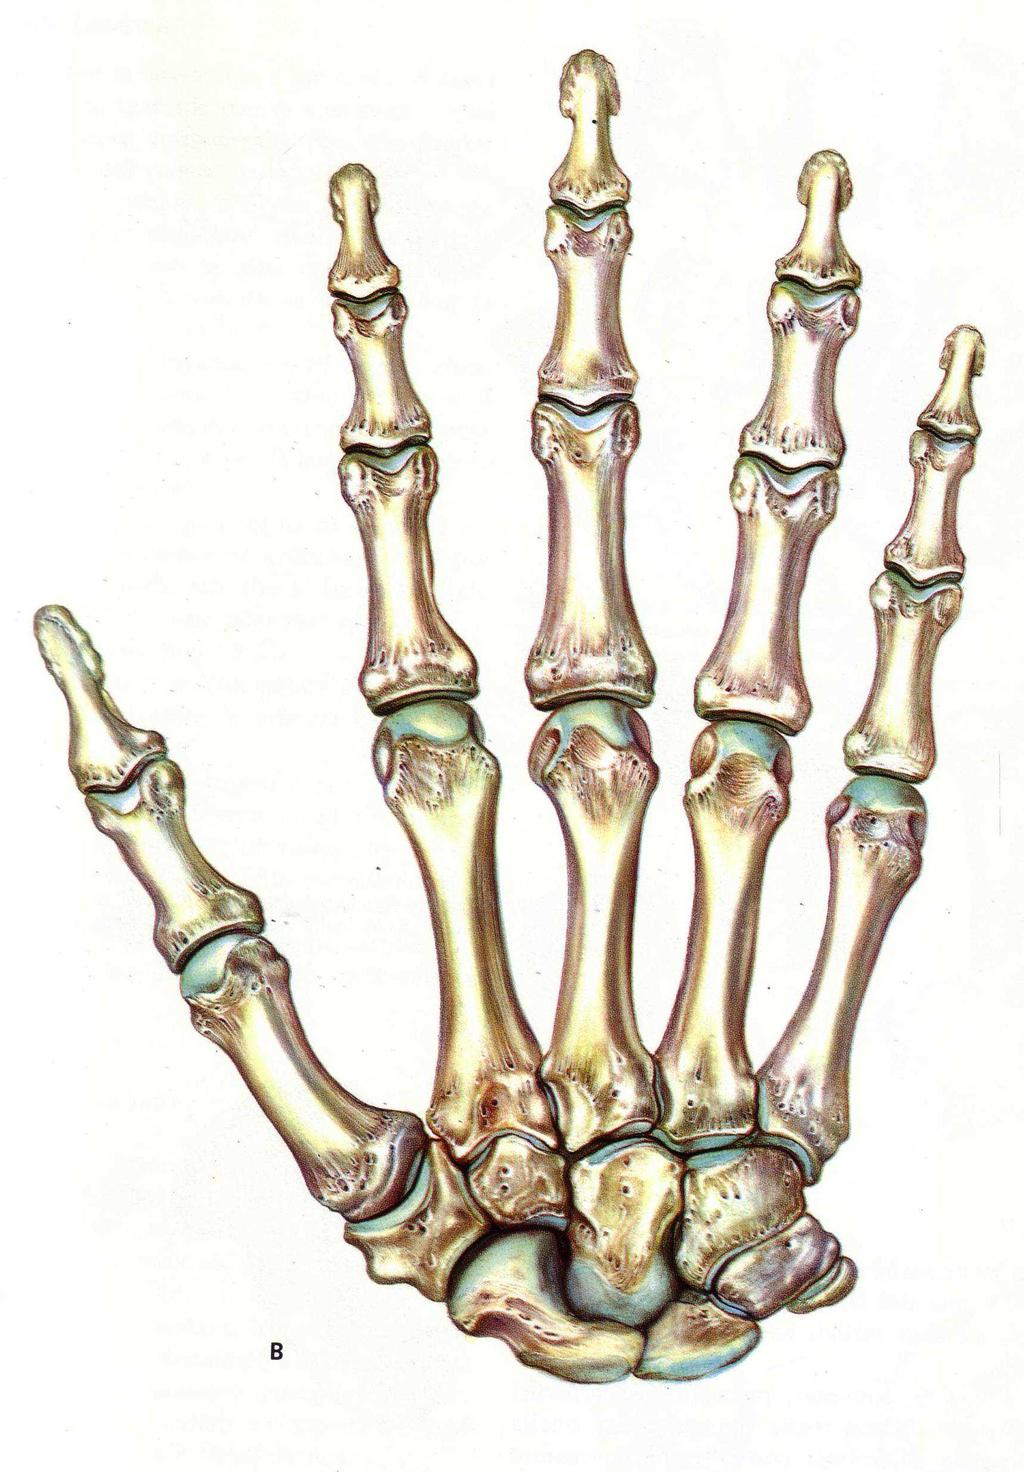 ARTROSI TRAPEZIO-METACARPALE O RIZOARTROSI L artrosi dell articolazione trapezio-metacarpale (TM), articolazione che si trova nella mano alla base del pollice (fig. 1), è chiamata rizoartrosi.